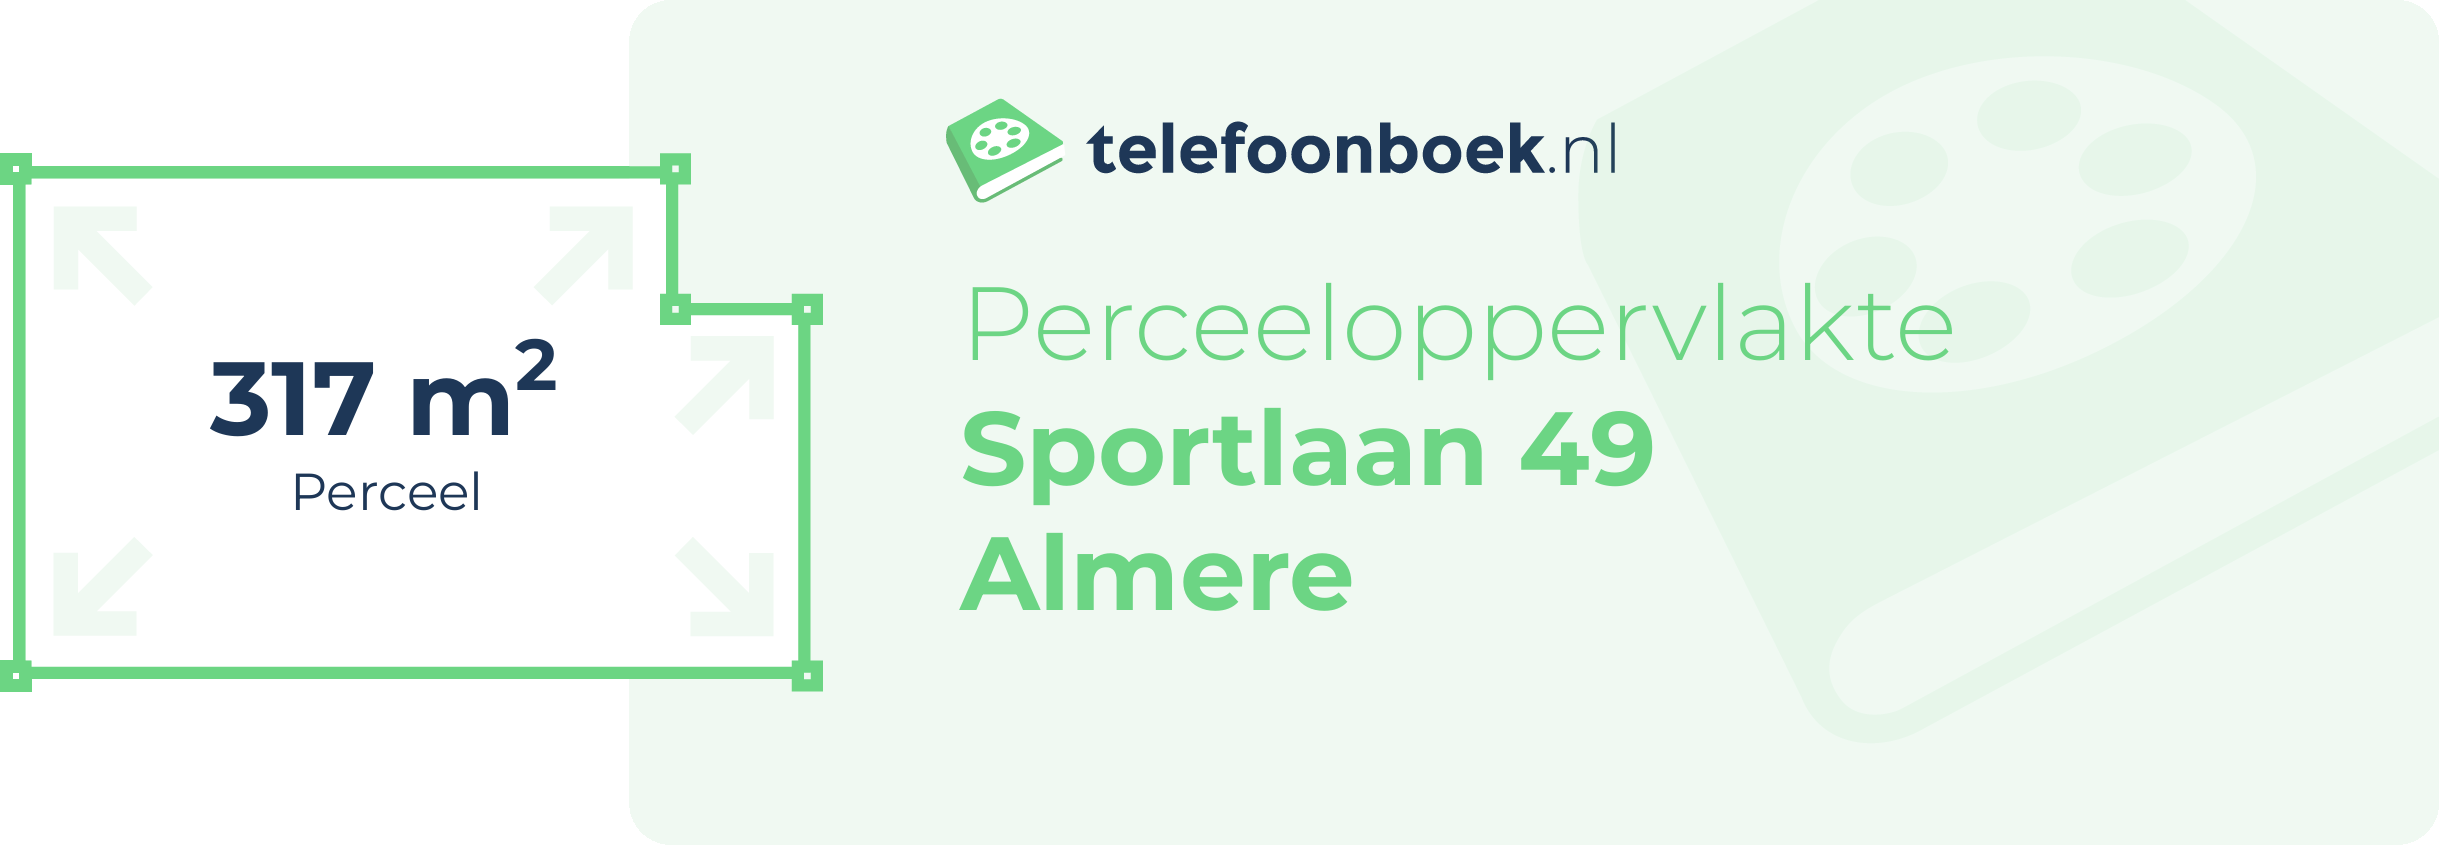 Perceeloppervlakte Sportlaan 49 Almere